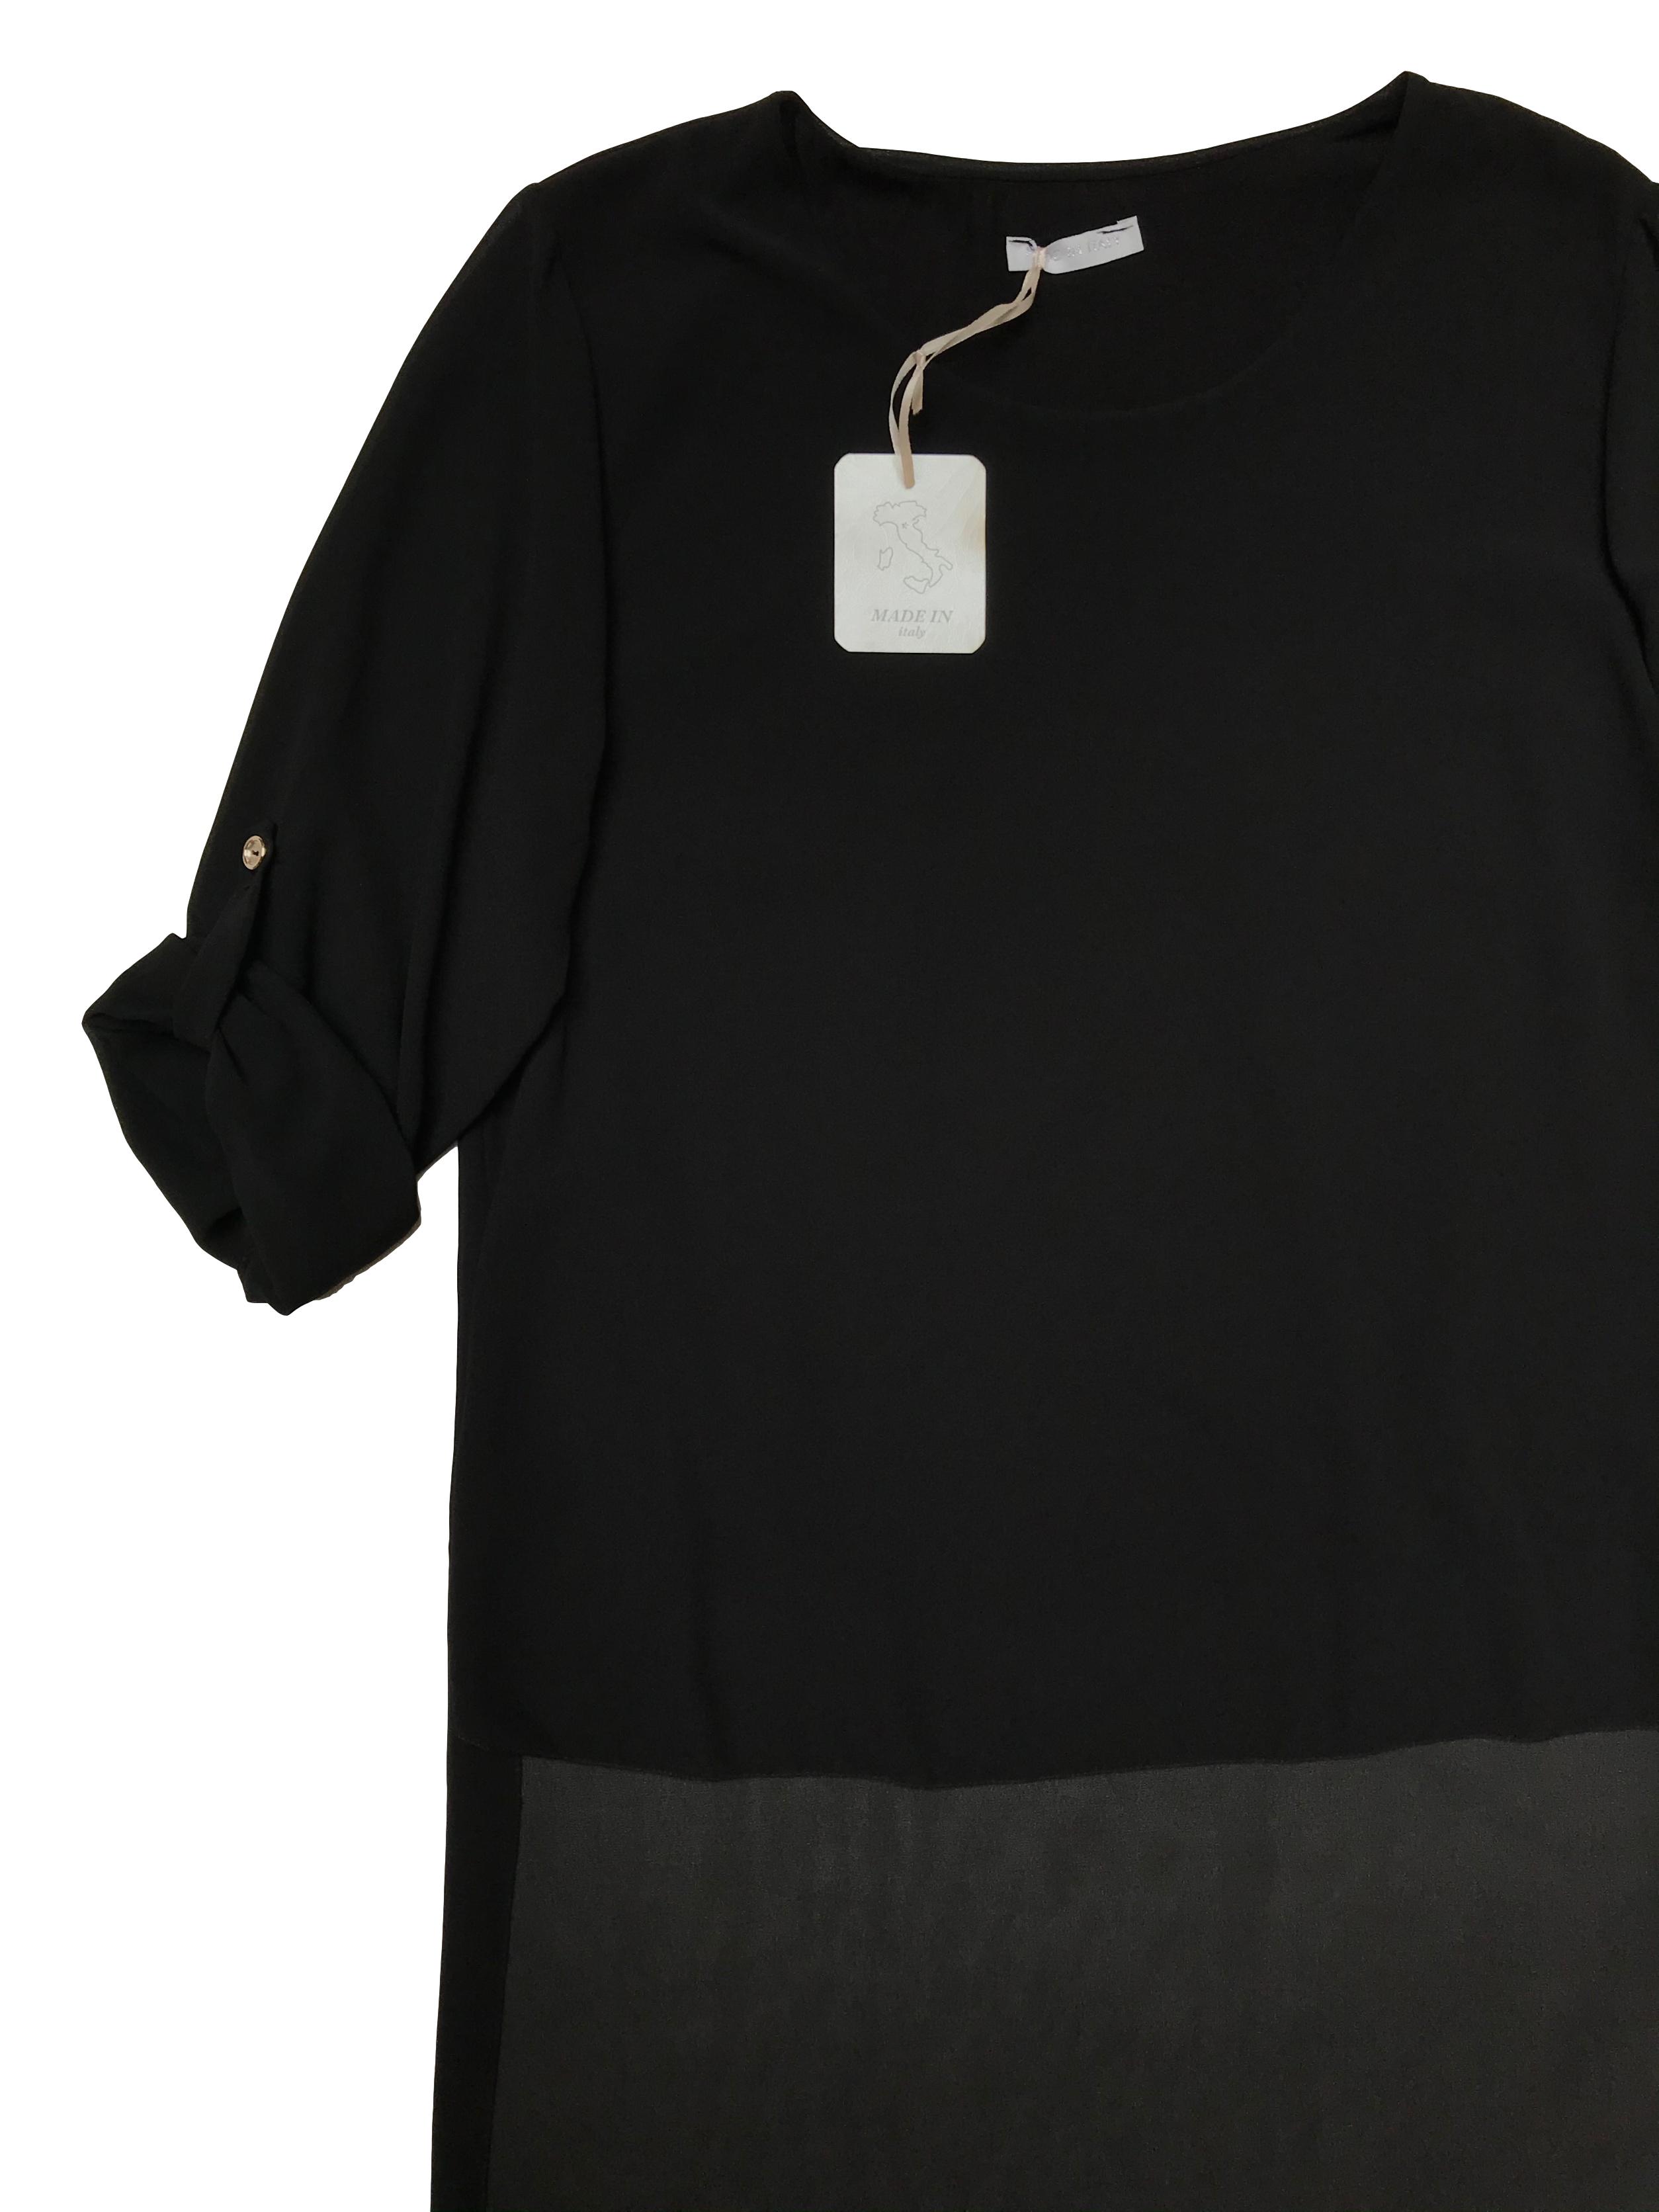 Blusa asimétrica de gasa negra, lleva forro y tiene mangas de largo regulable con botón. Nueva con etiqueta. Busto 100cm Largo 59 - 110cm